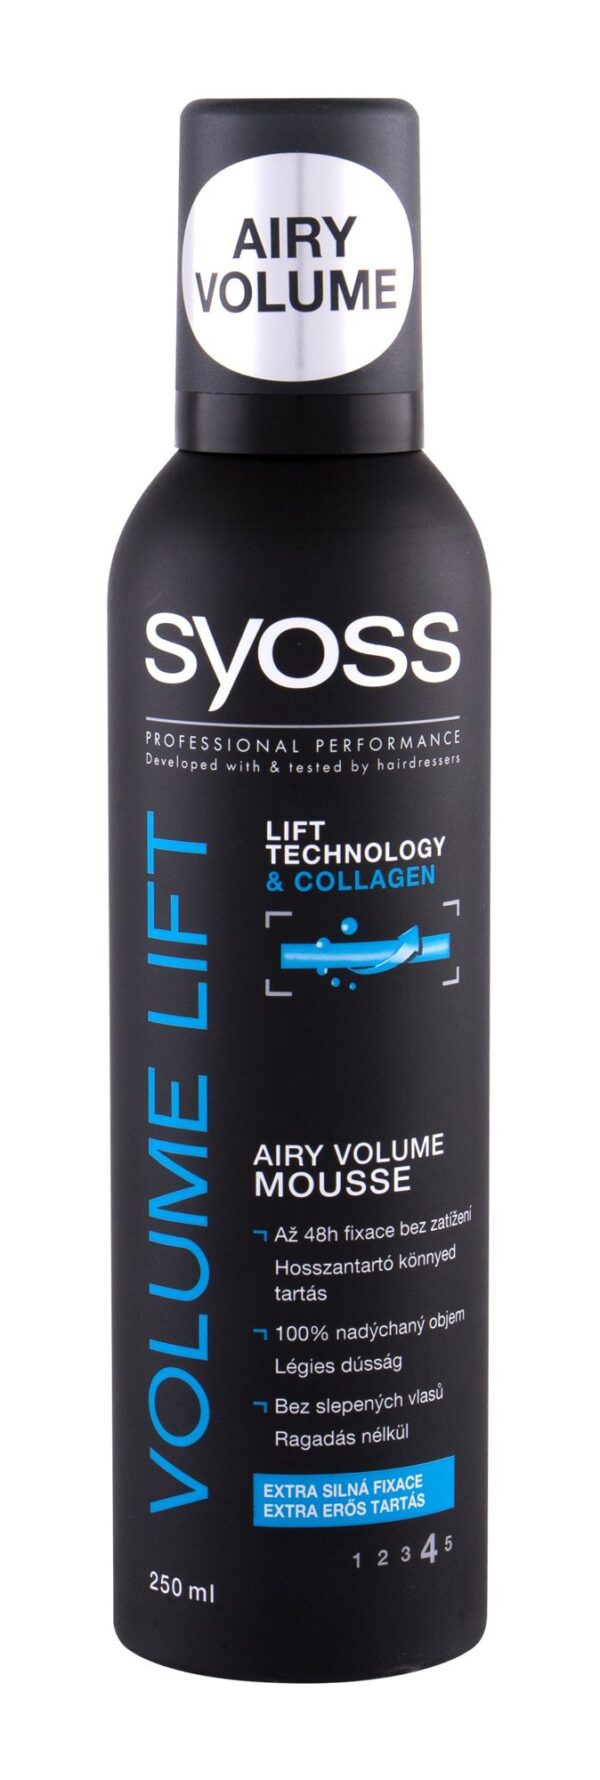 Pianka do włosów Syoss Professional Performance Volume Lift